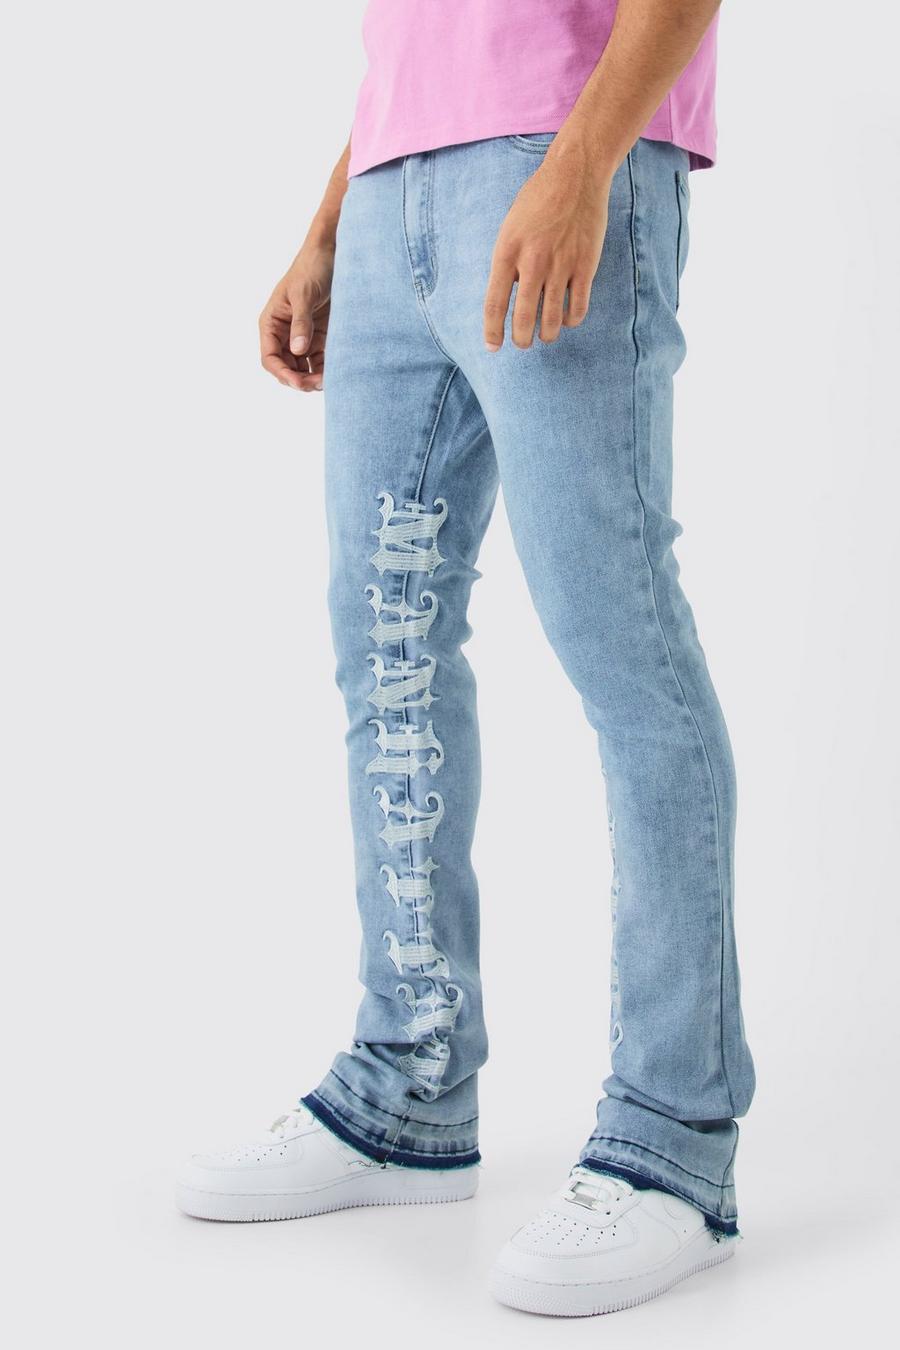 Jeans Skinny Fit Stretch con inserti, ricami, pieghe e pieghe sul fondo, Ice blue